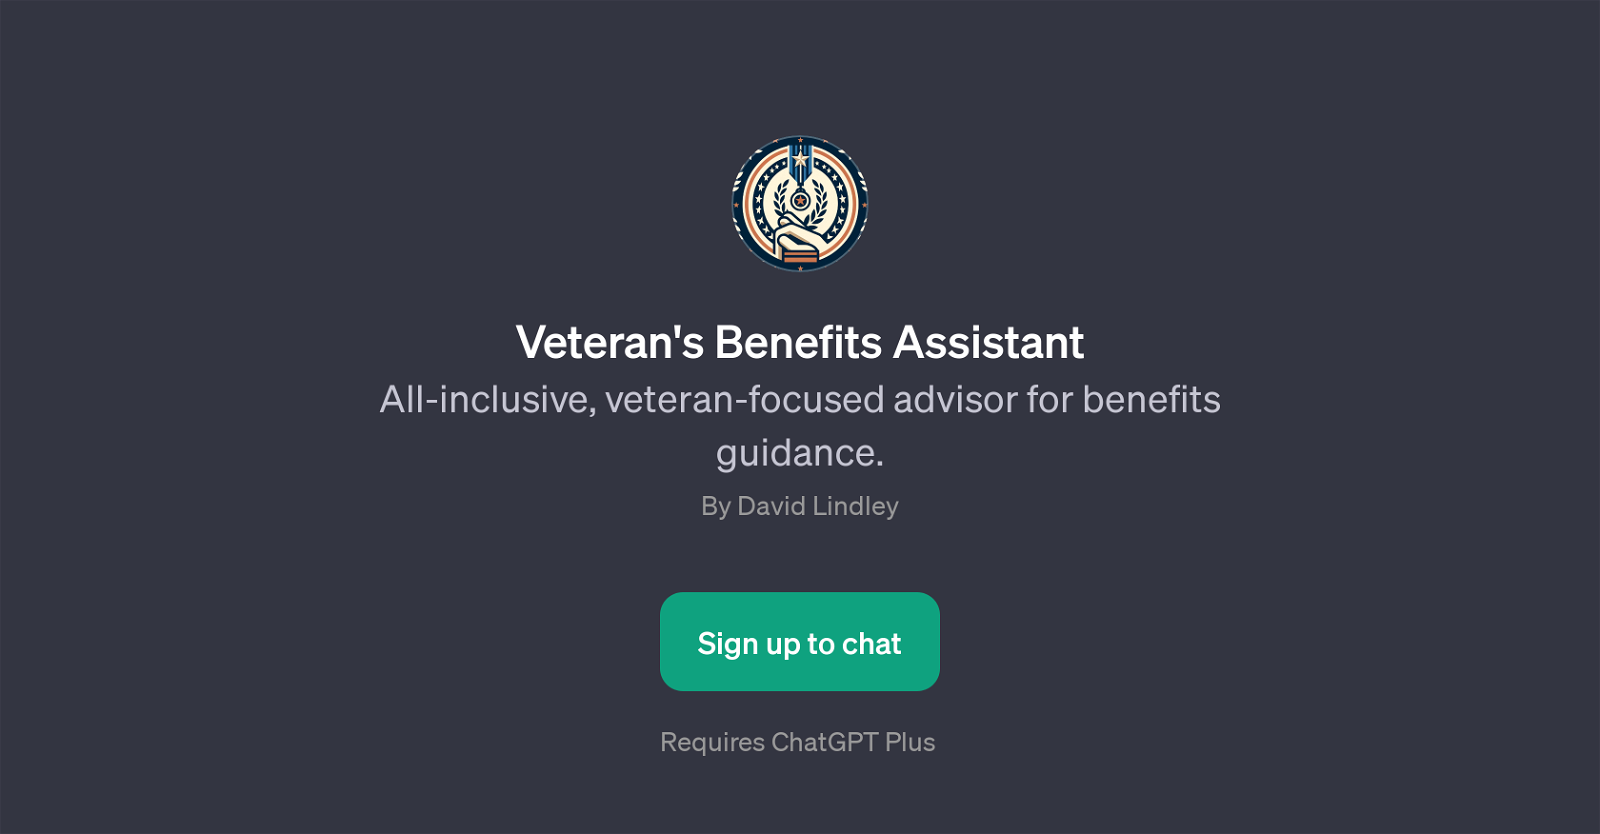 Veteran's Benefits Assistant website